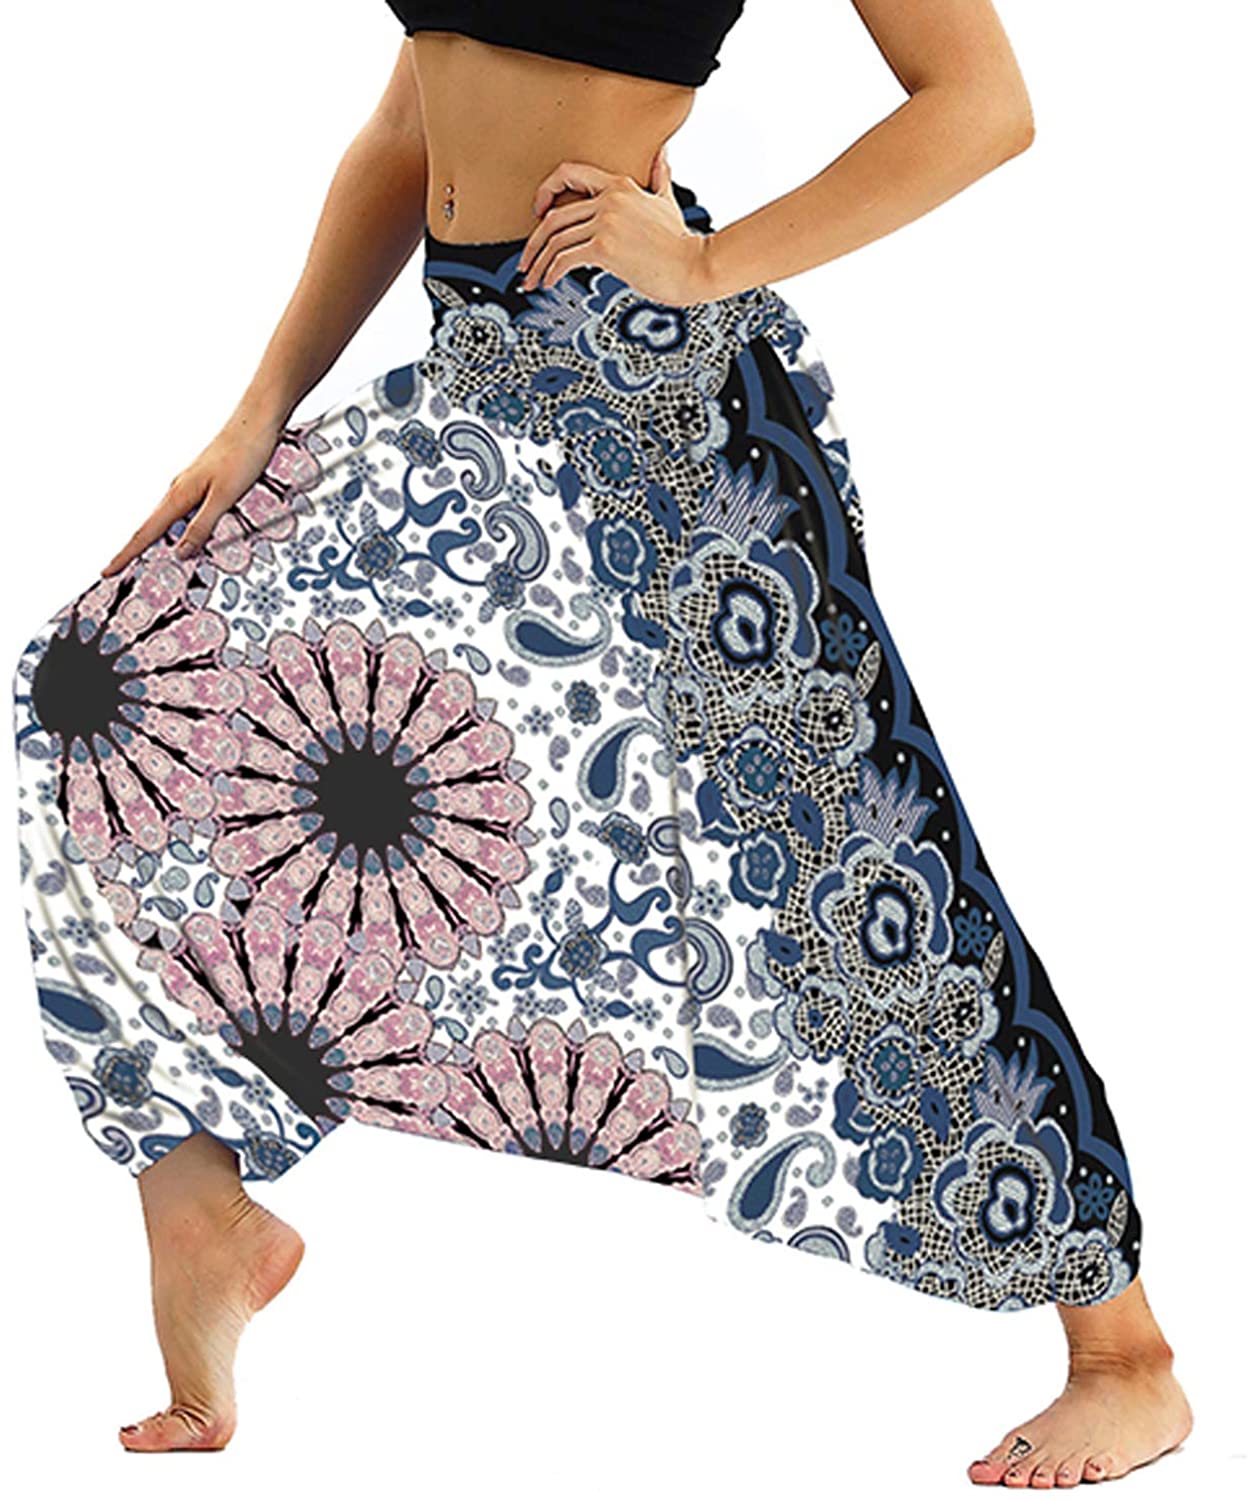 Lu's Chic - Pantalones holgados para mujer, estilo hippie indio